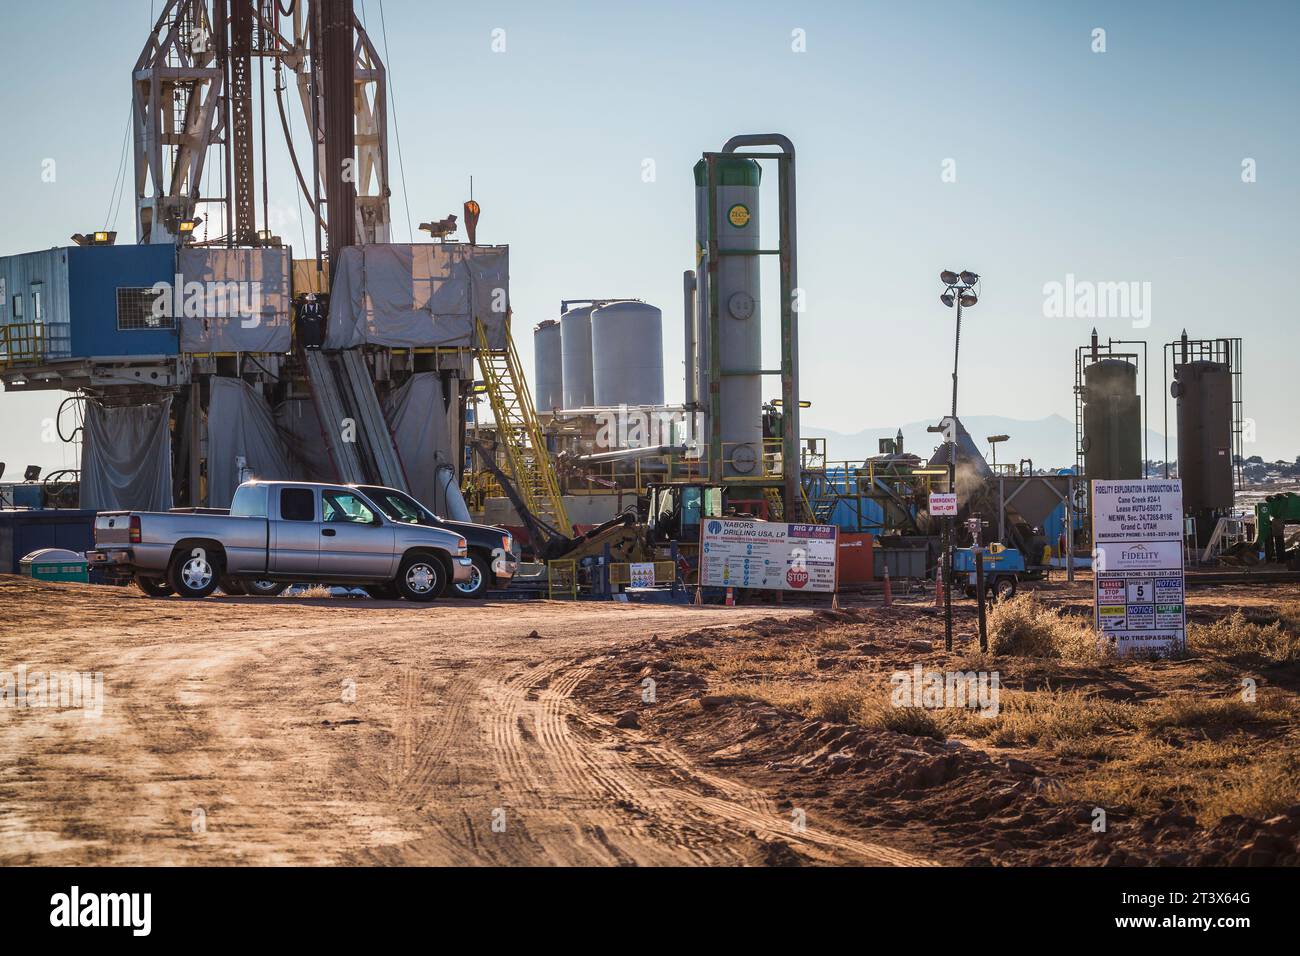 Ein Öl- und/oder Gasbetrieb mit Lkws, Schildern und Bohrgeräten. Stockfoto